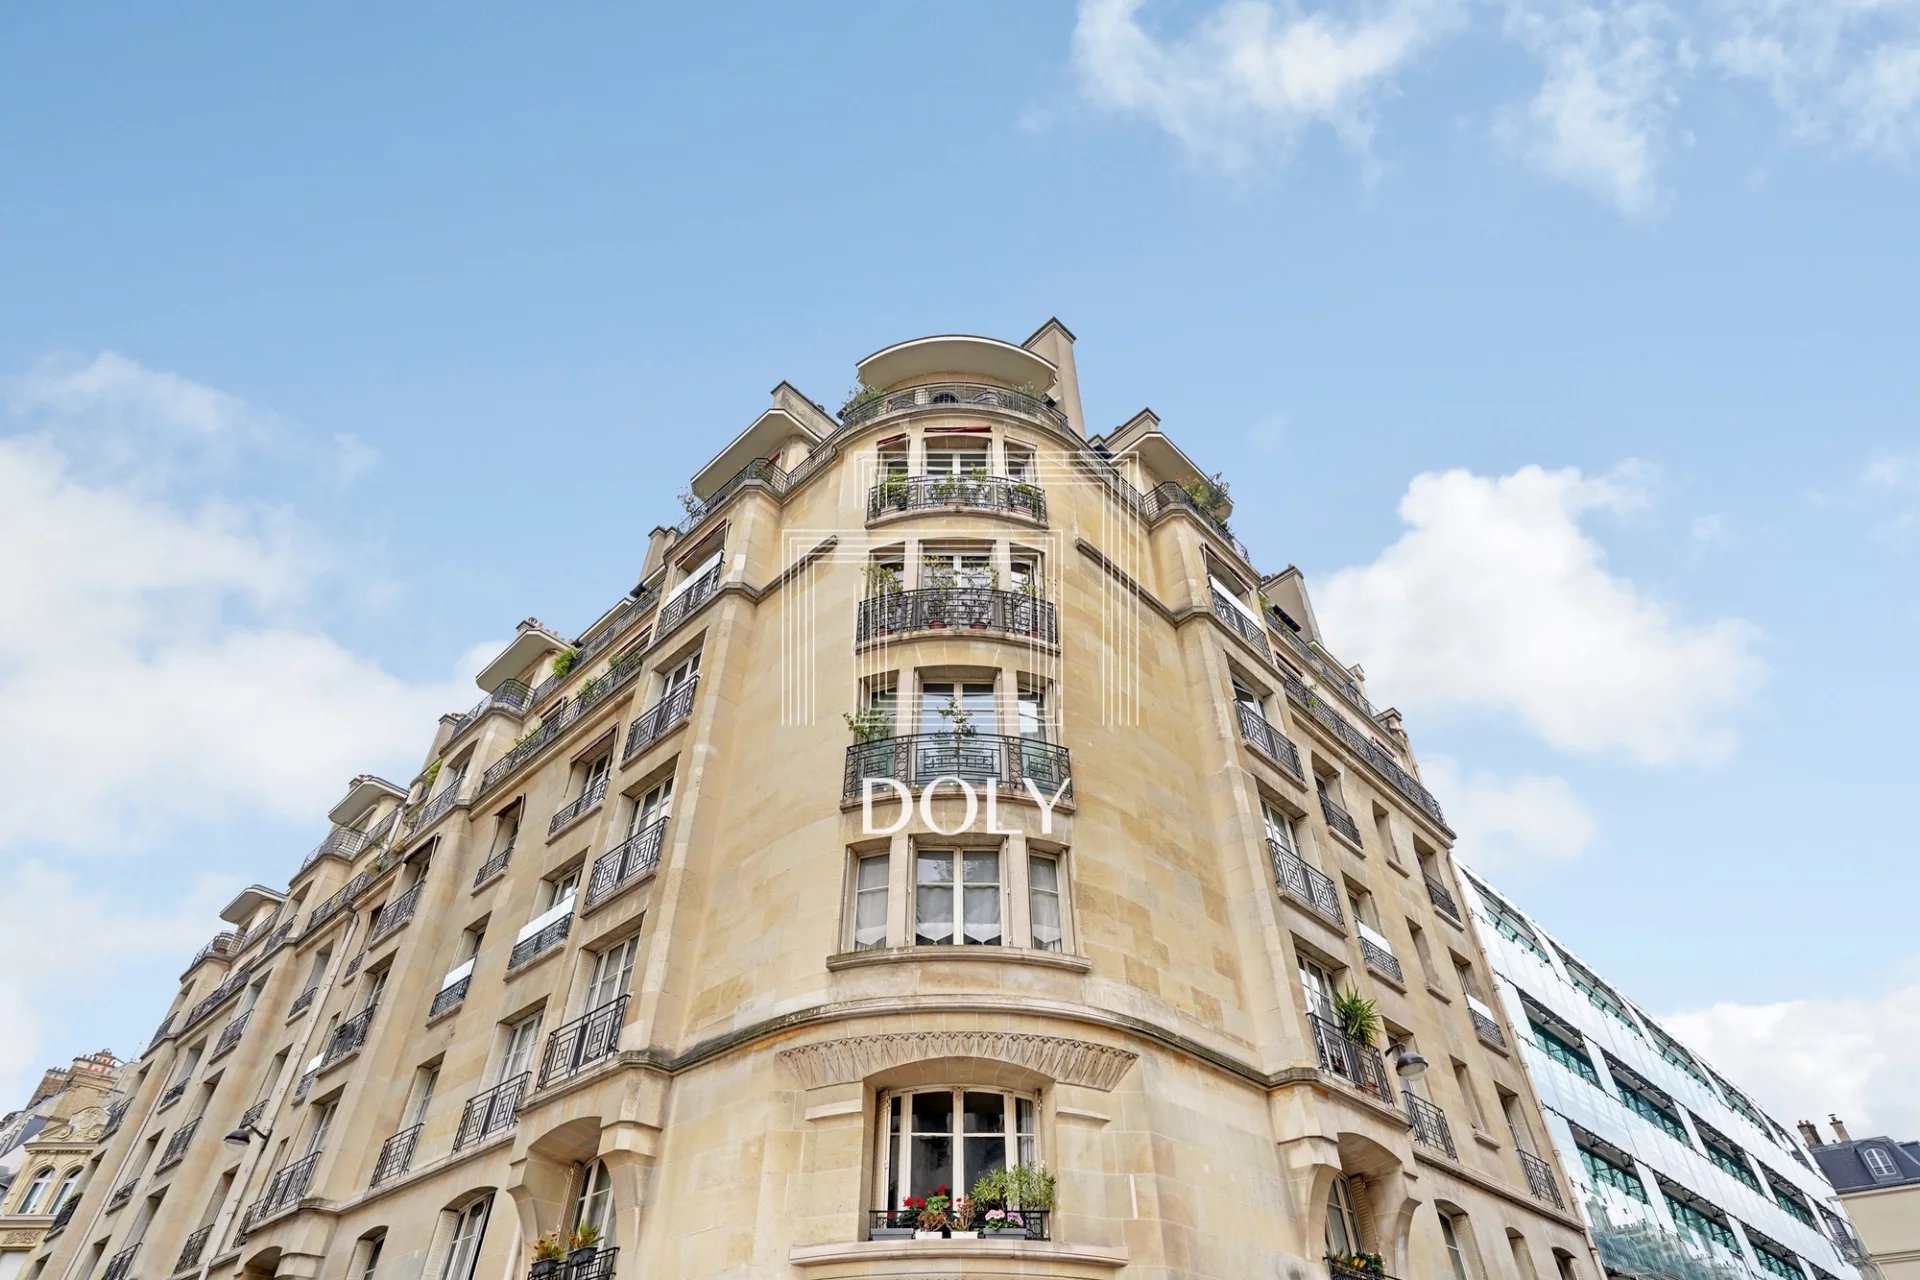 Appartement 6 pièces 181m2 // Rue de l’Université //Paris VII